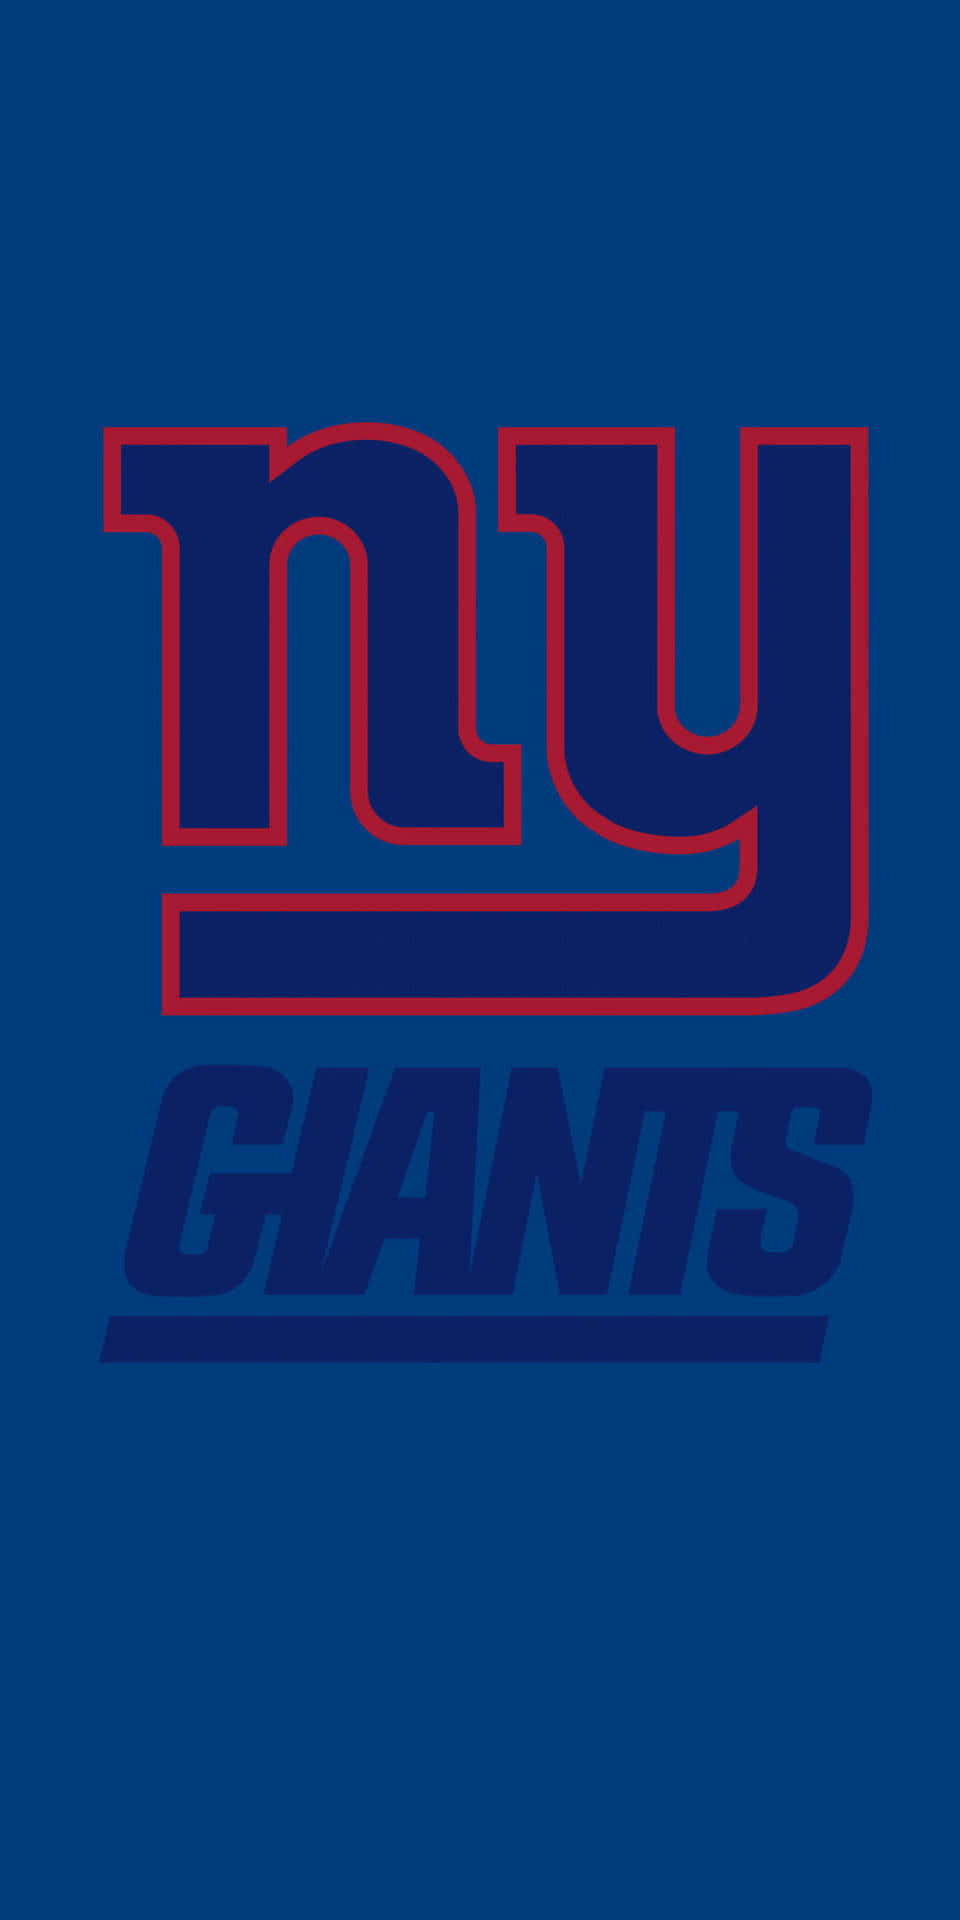 New York Giants Logo Vertical Wallpaper